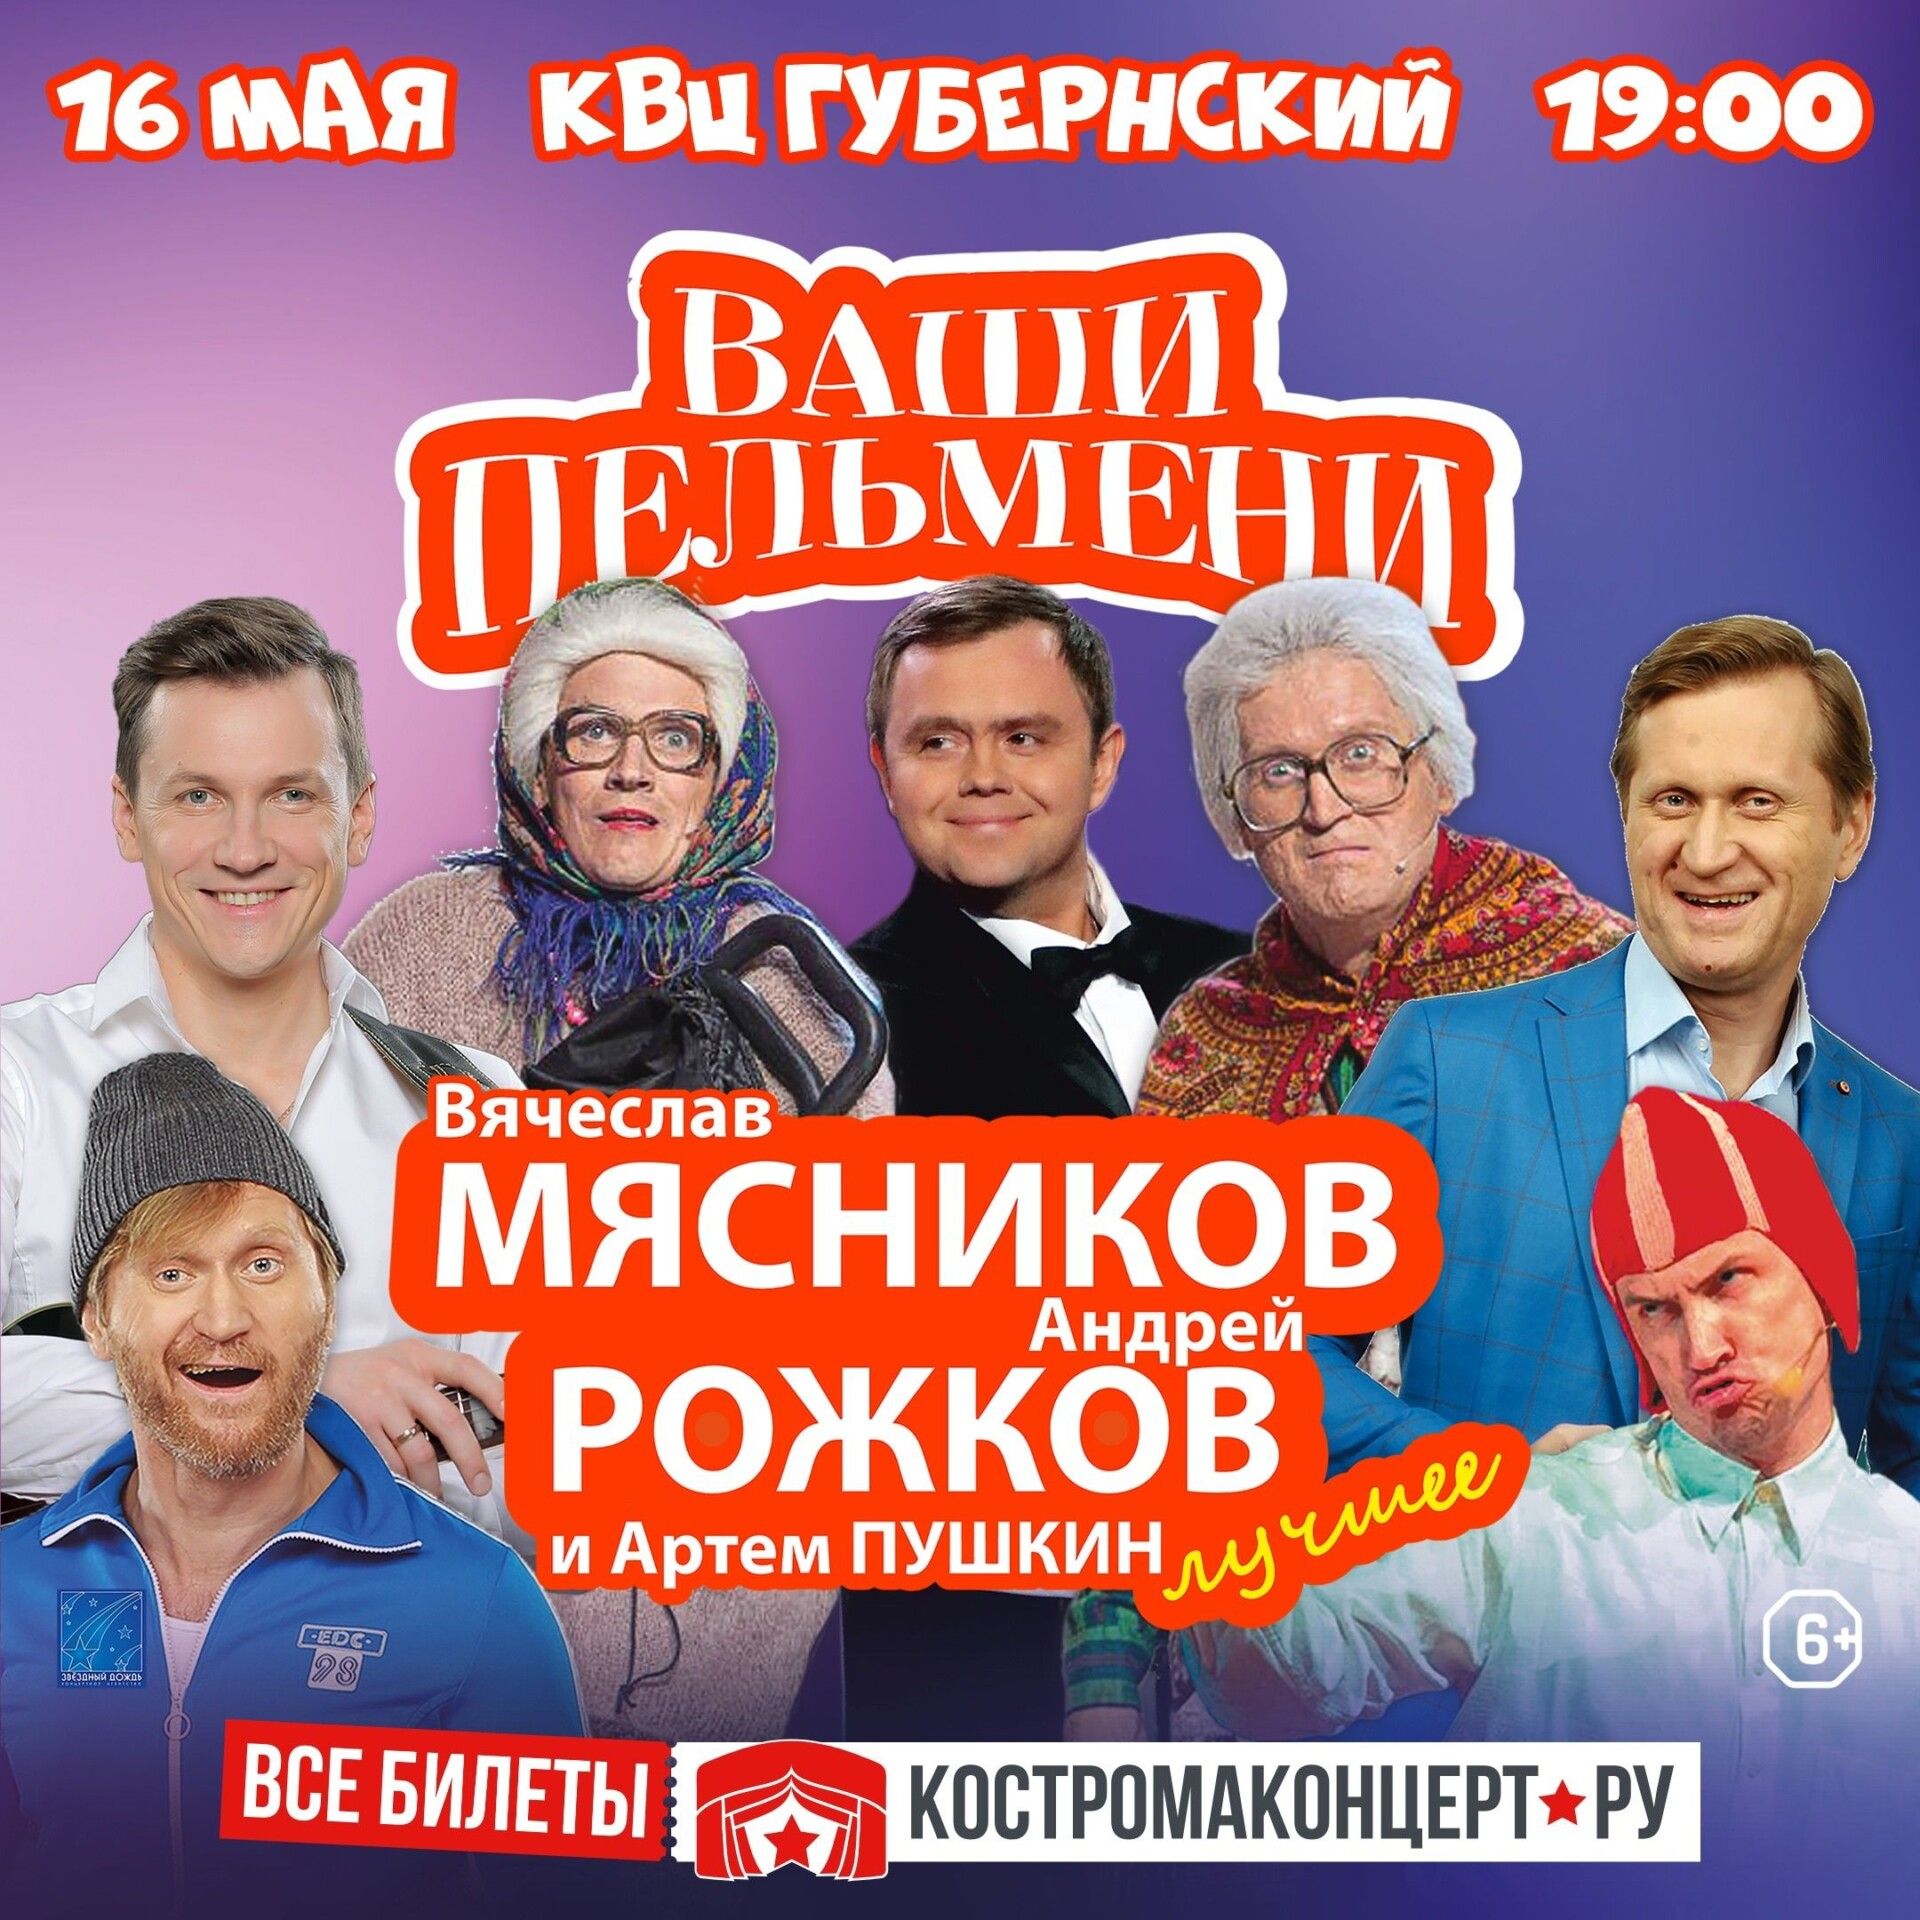 Много смеха и веселья: знаменитые «Пельмени» приезжают в Кострому